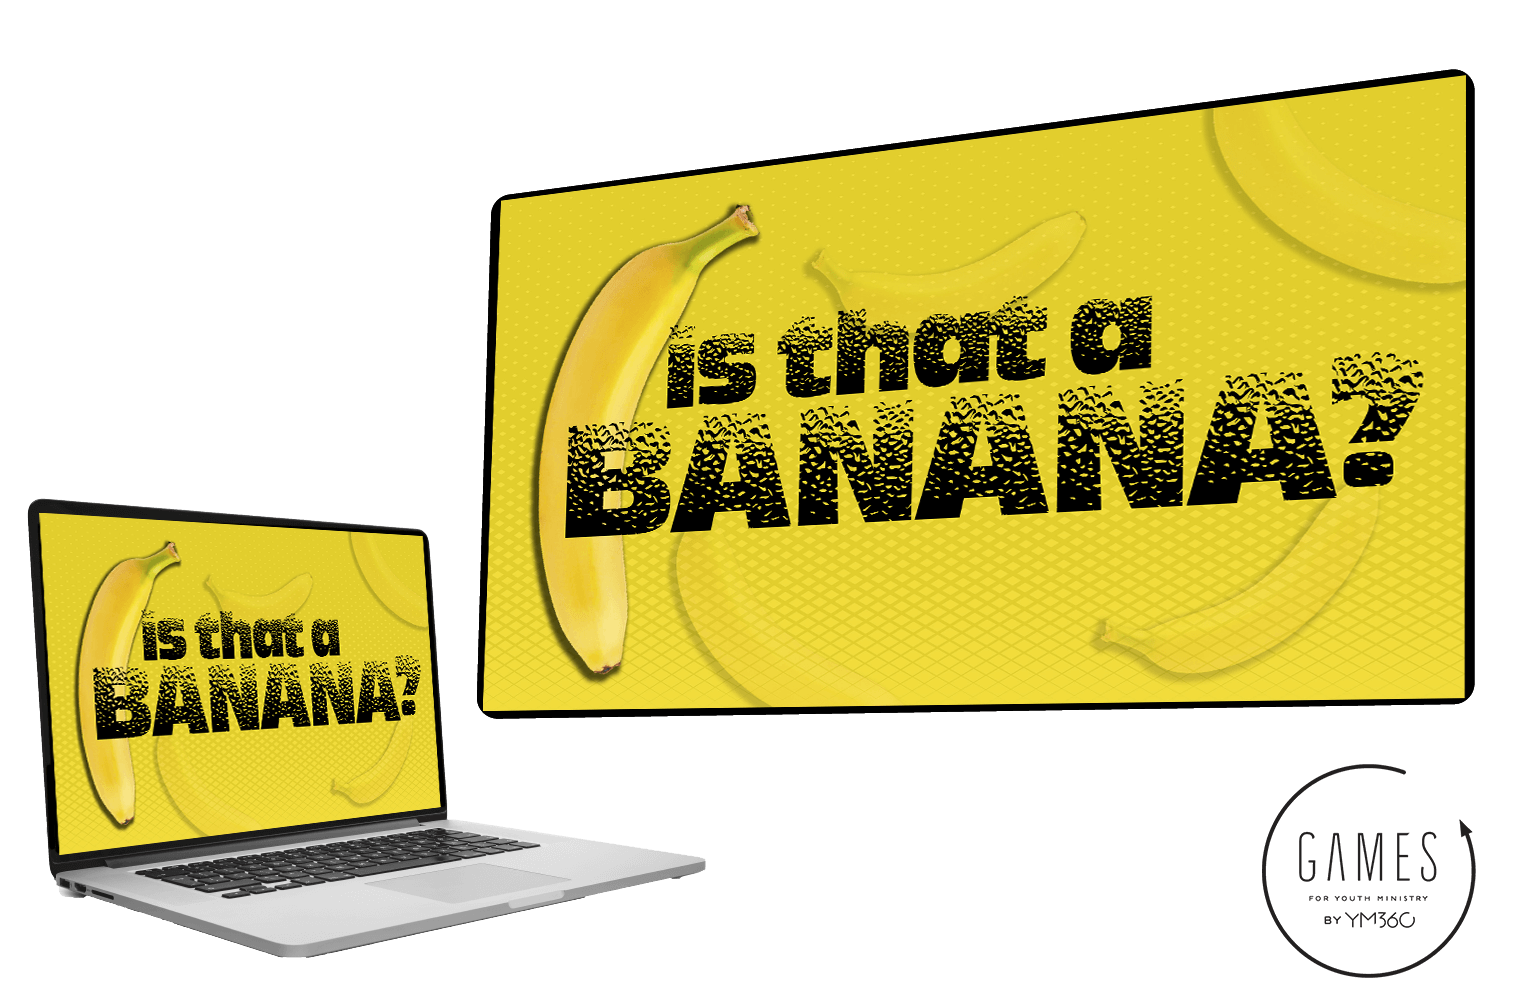 Banana Games - Banana Games added a new photo.